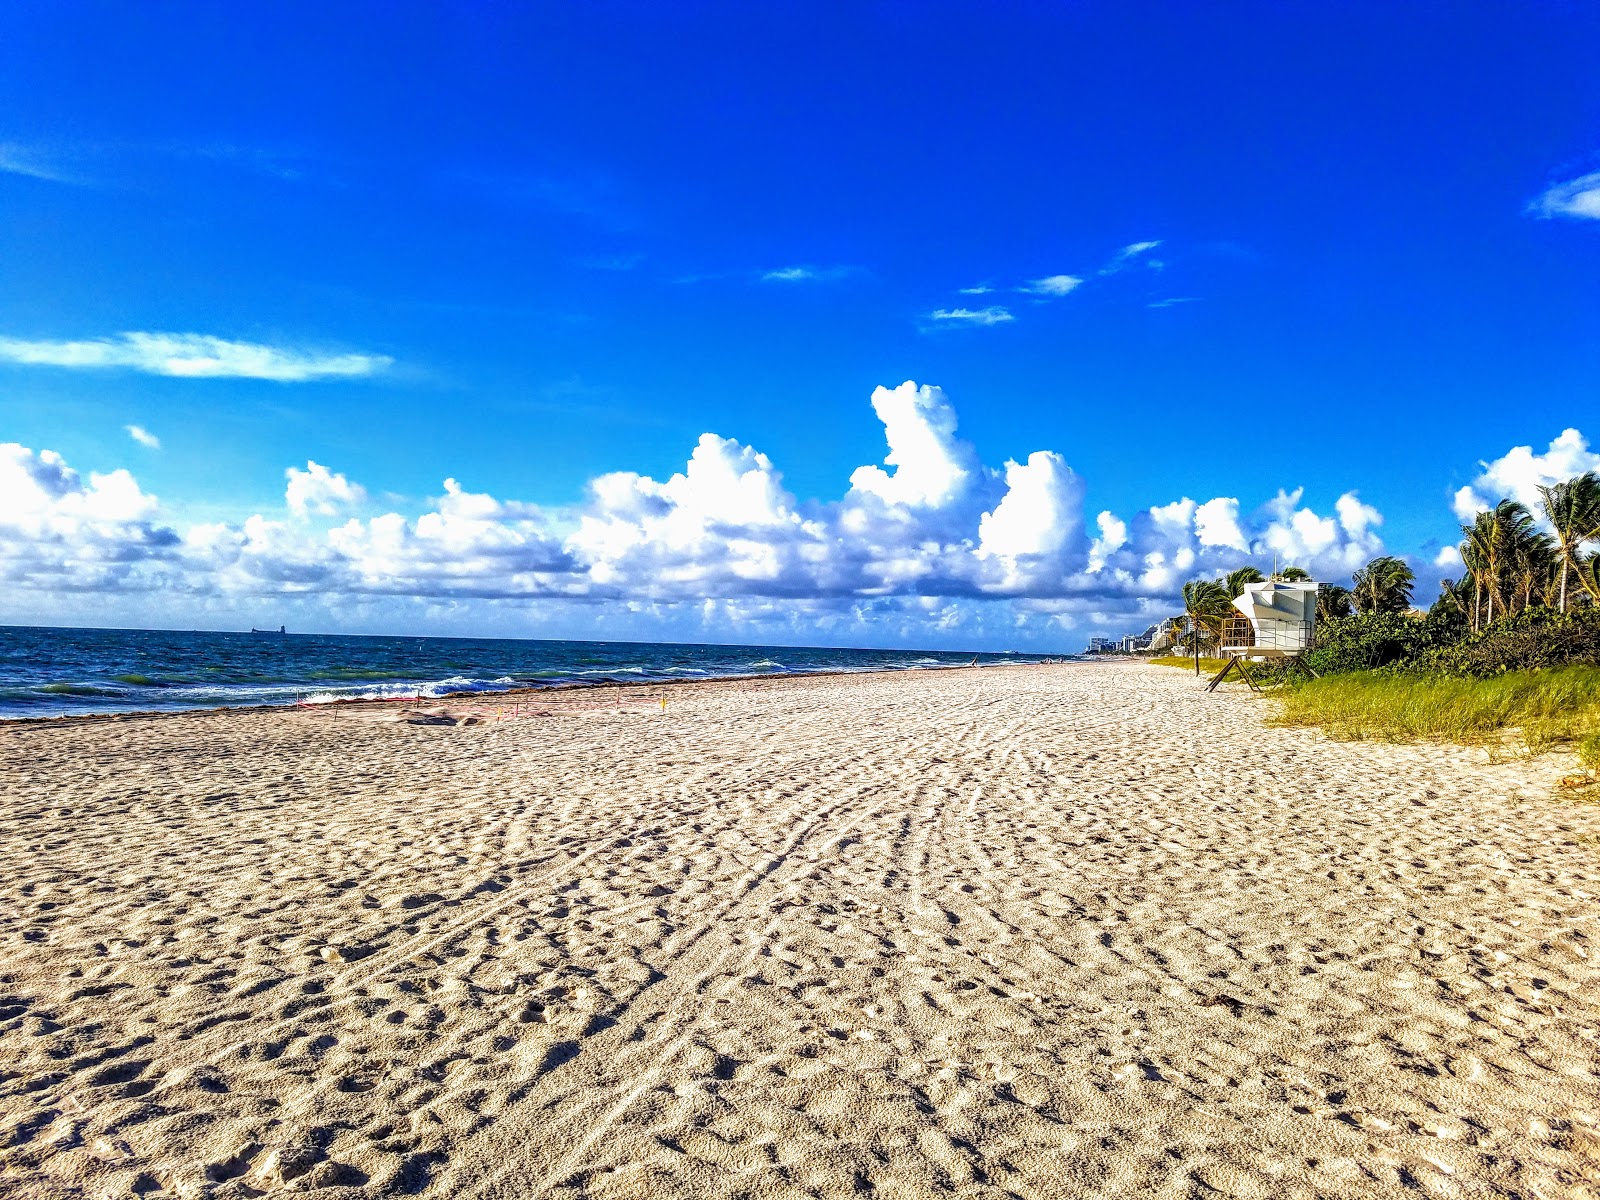 Zdjęcie Fort Lauderdale beach obszar udogodnień